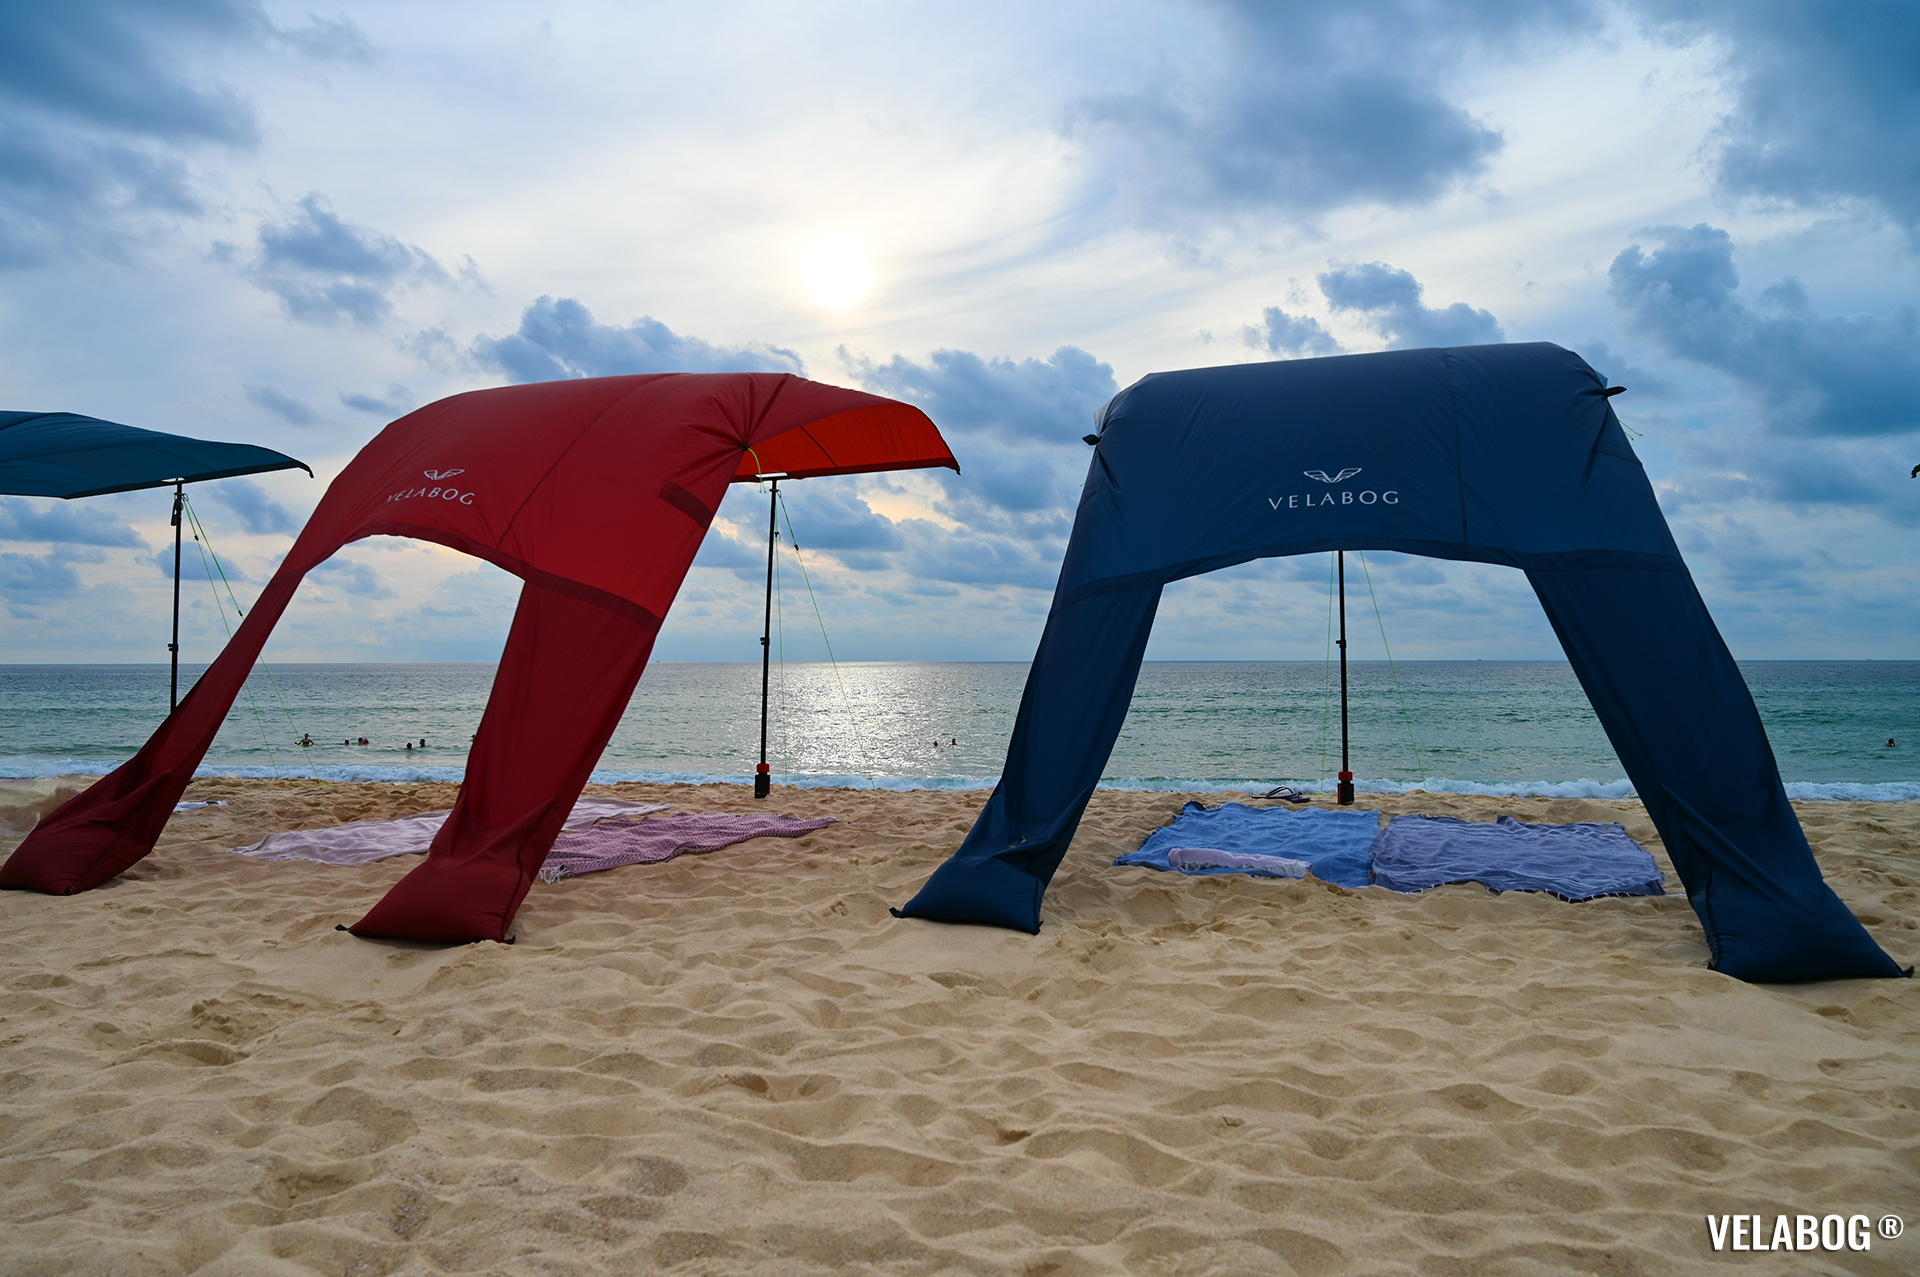 Два солнечных паруса Velabog «Breeze». Лучшее укрытие от солнца на ветренном пляже. Вариант установки при слабом или сильном ветре. Вид сзади.